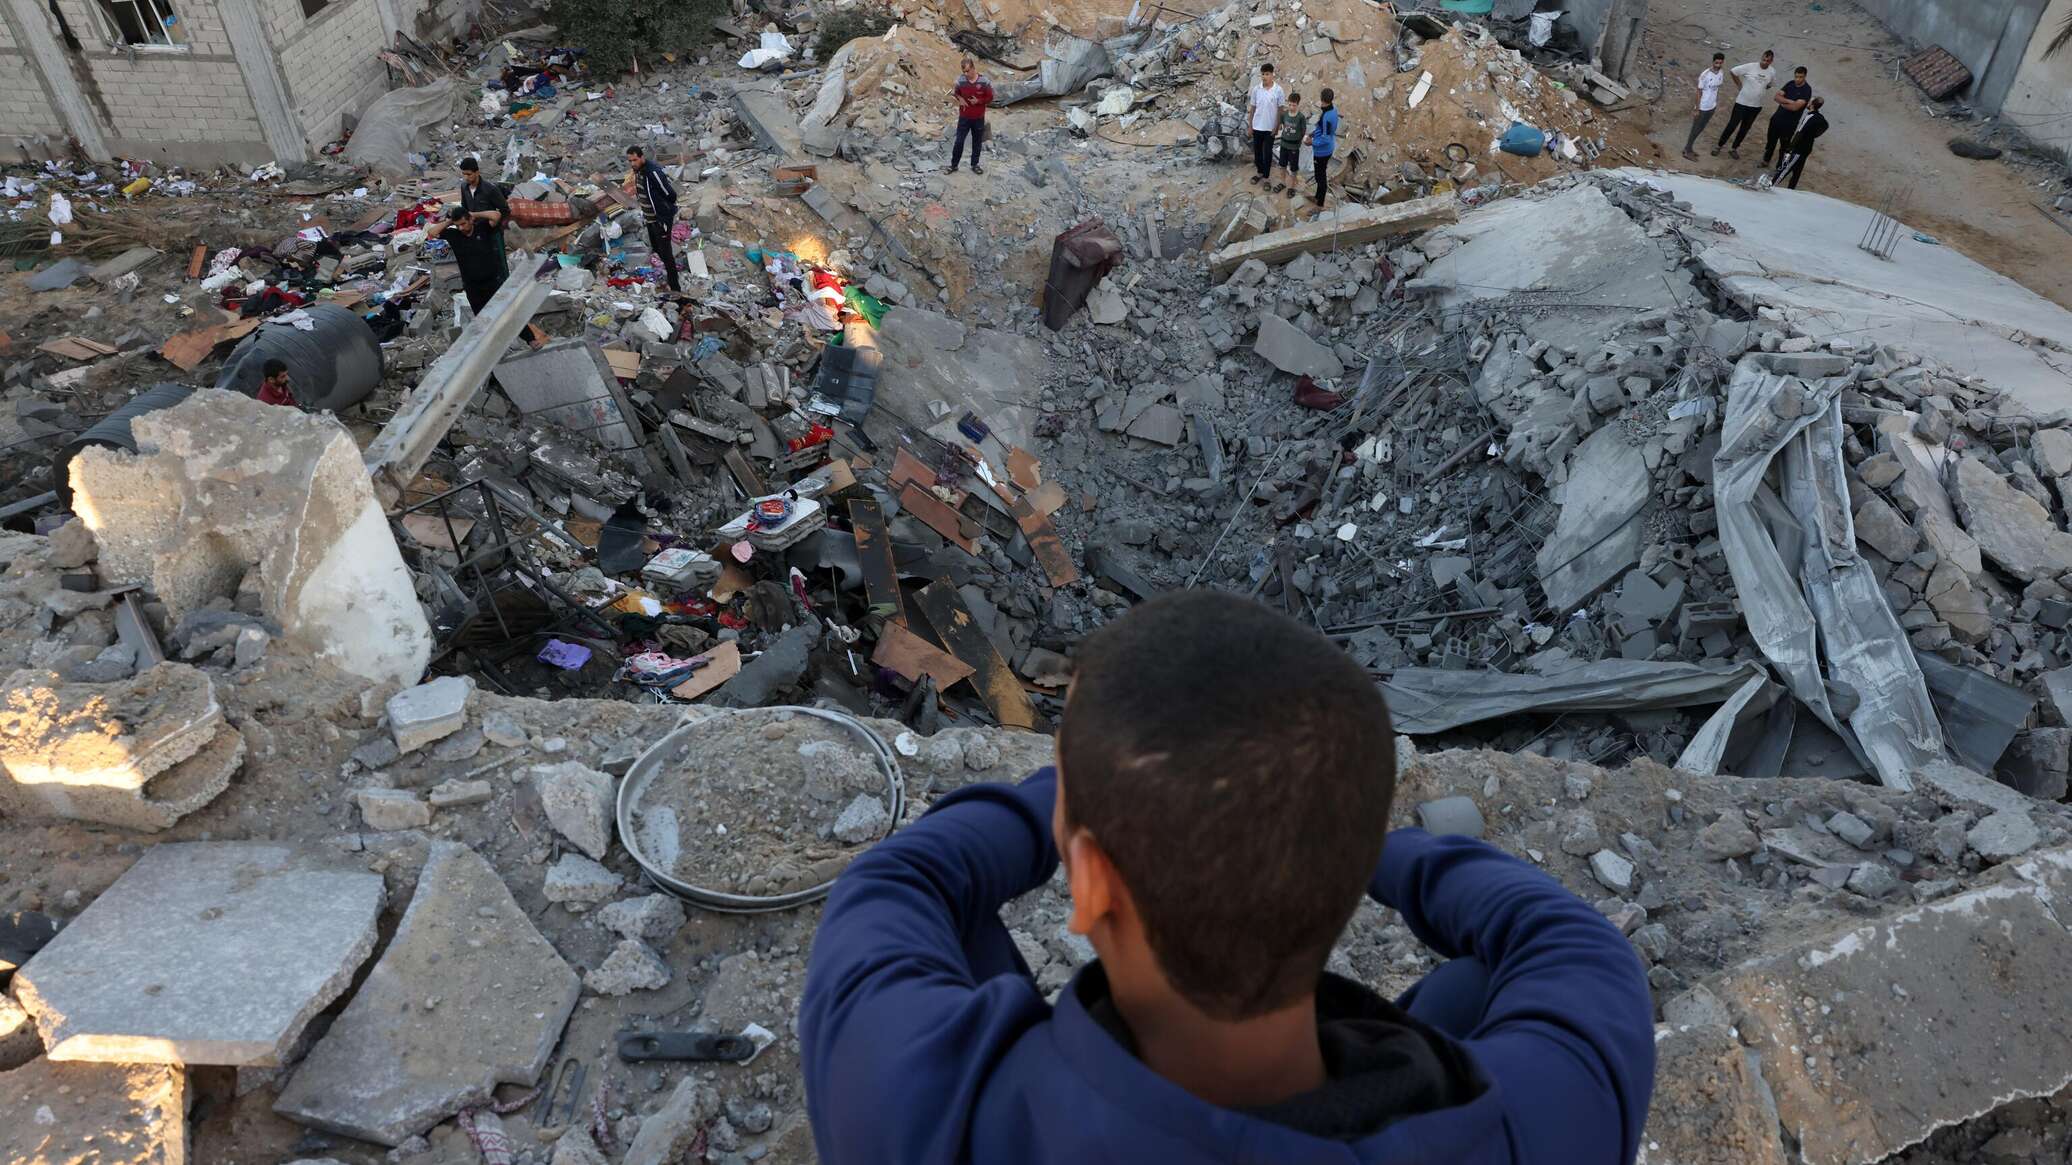 الصليب الأحمر الدولي يصف الوضع في غزة بـ"اليائس"